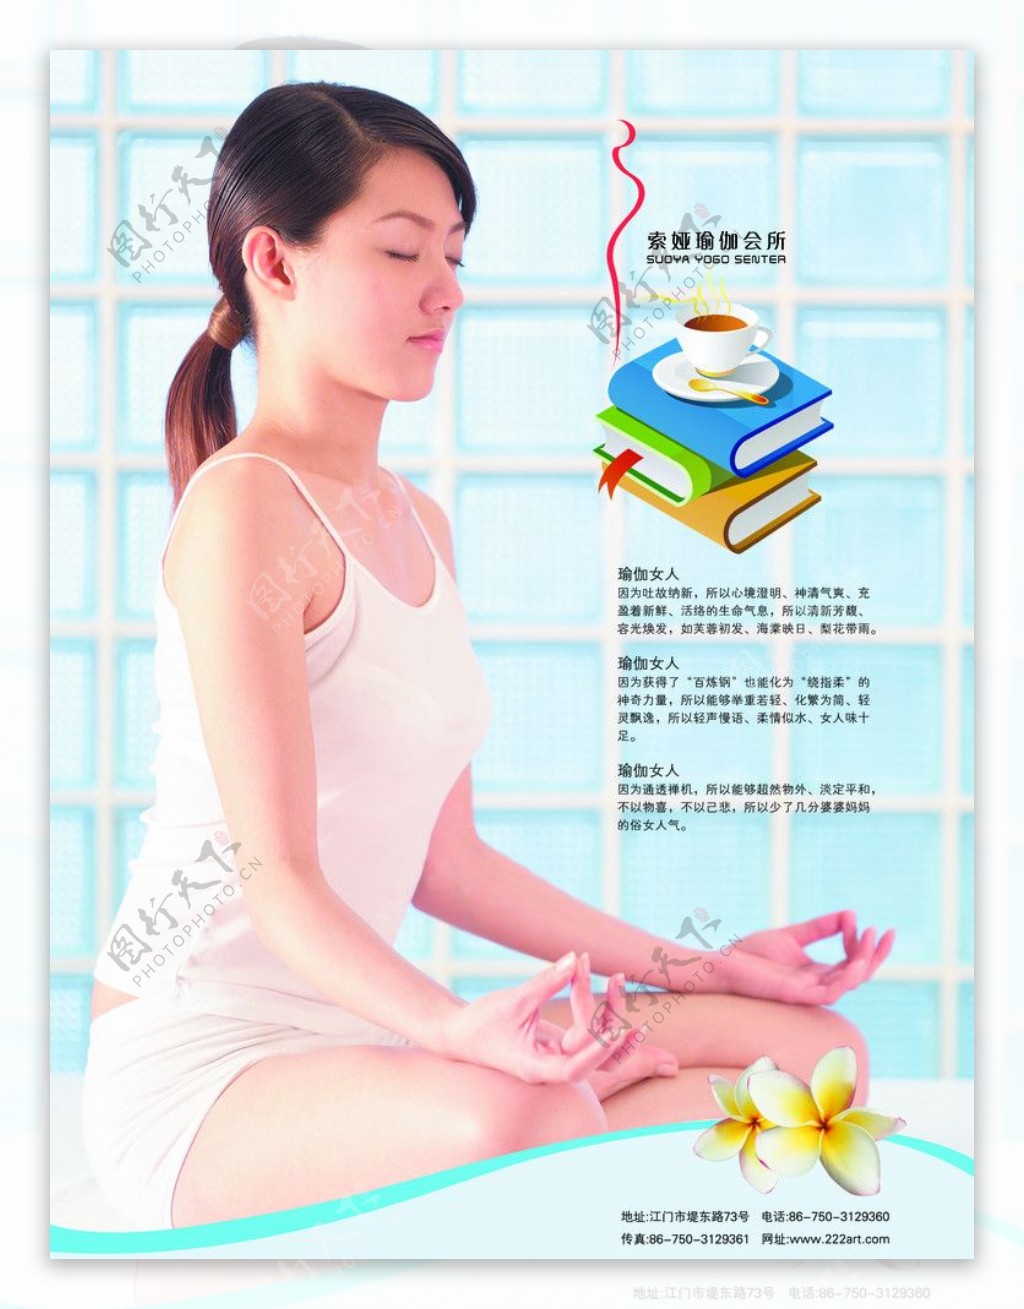 鹿泉市瑜伽女人美女书本减肥头发广告宣传知识介绍图片